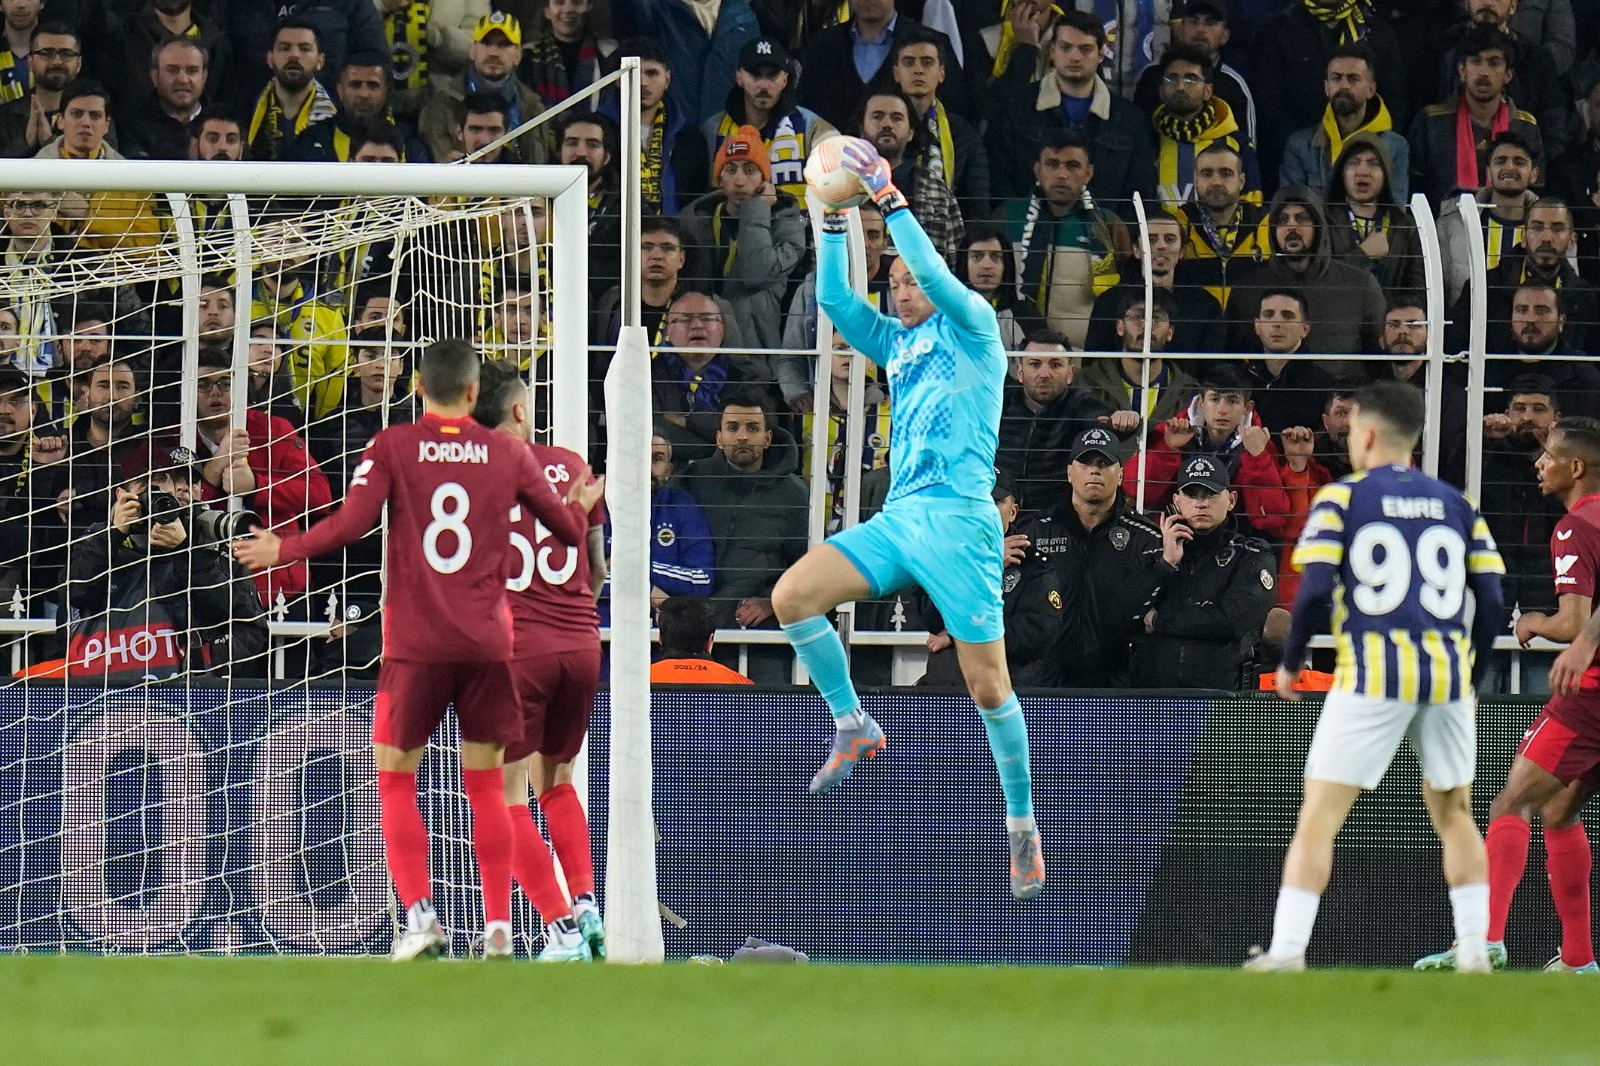 Dmitrovic atrapa un balón ante el Fenerbahçe